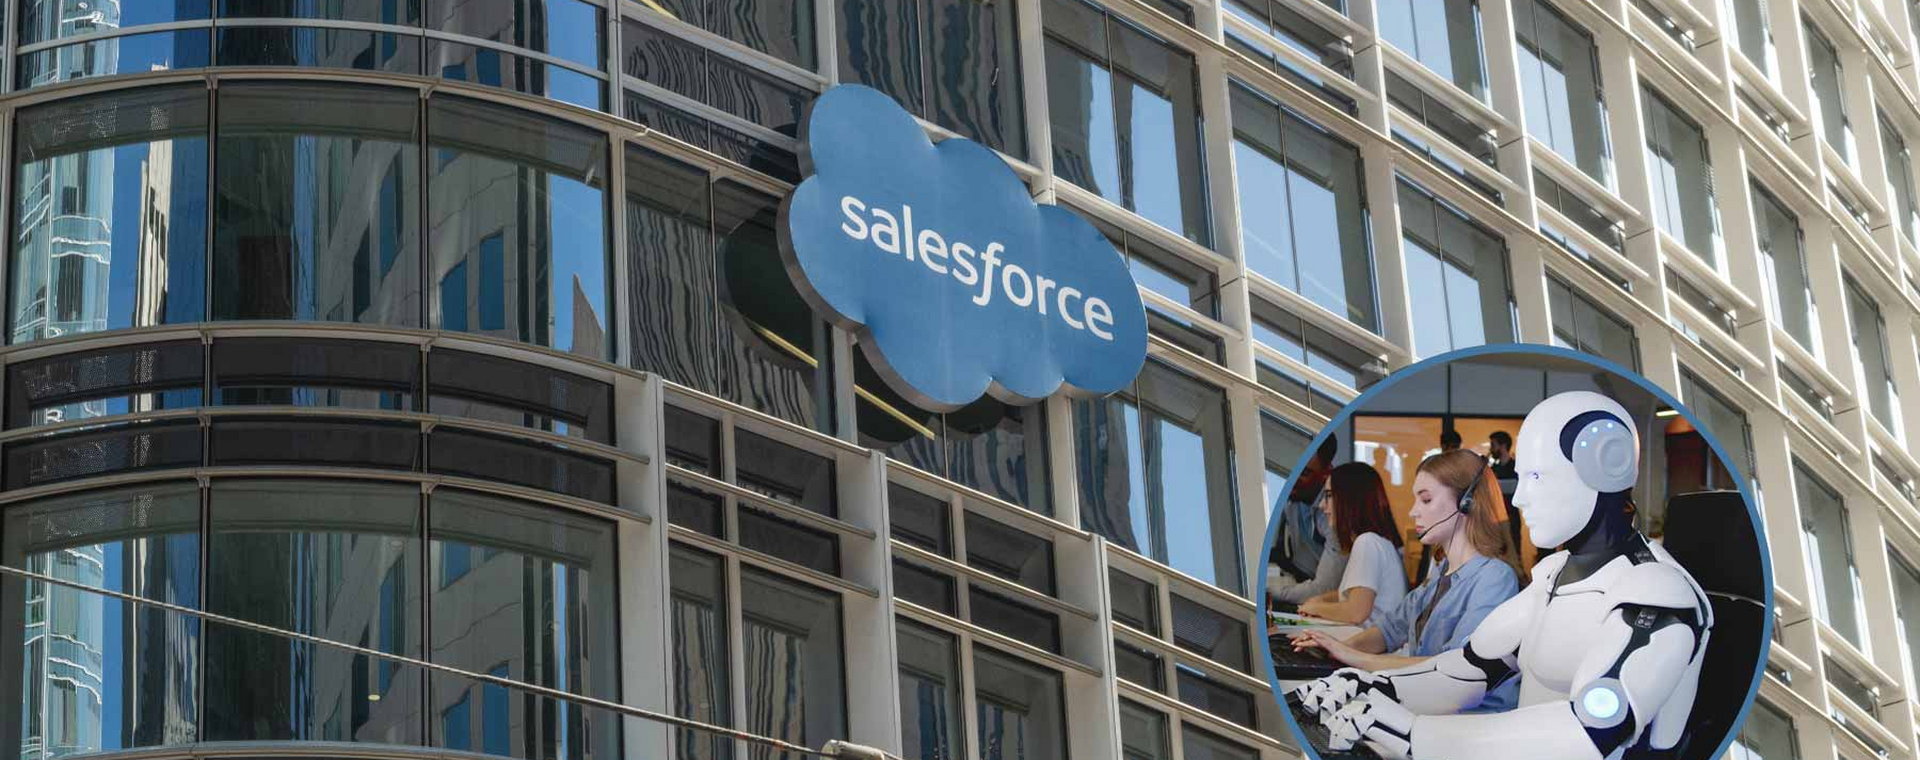 Salesforce zwolnił tysiące ludzi. Obecnie bardzo rozwija AI